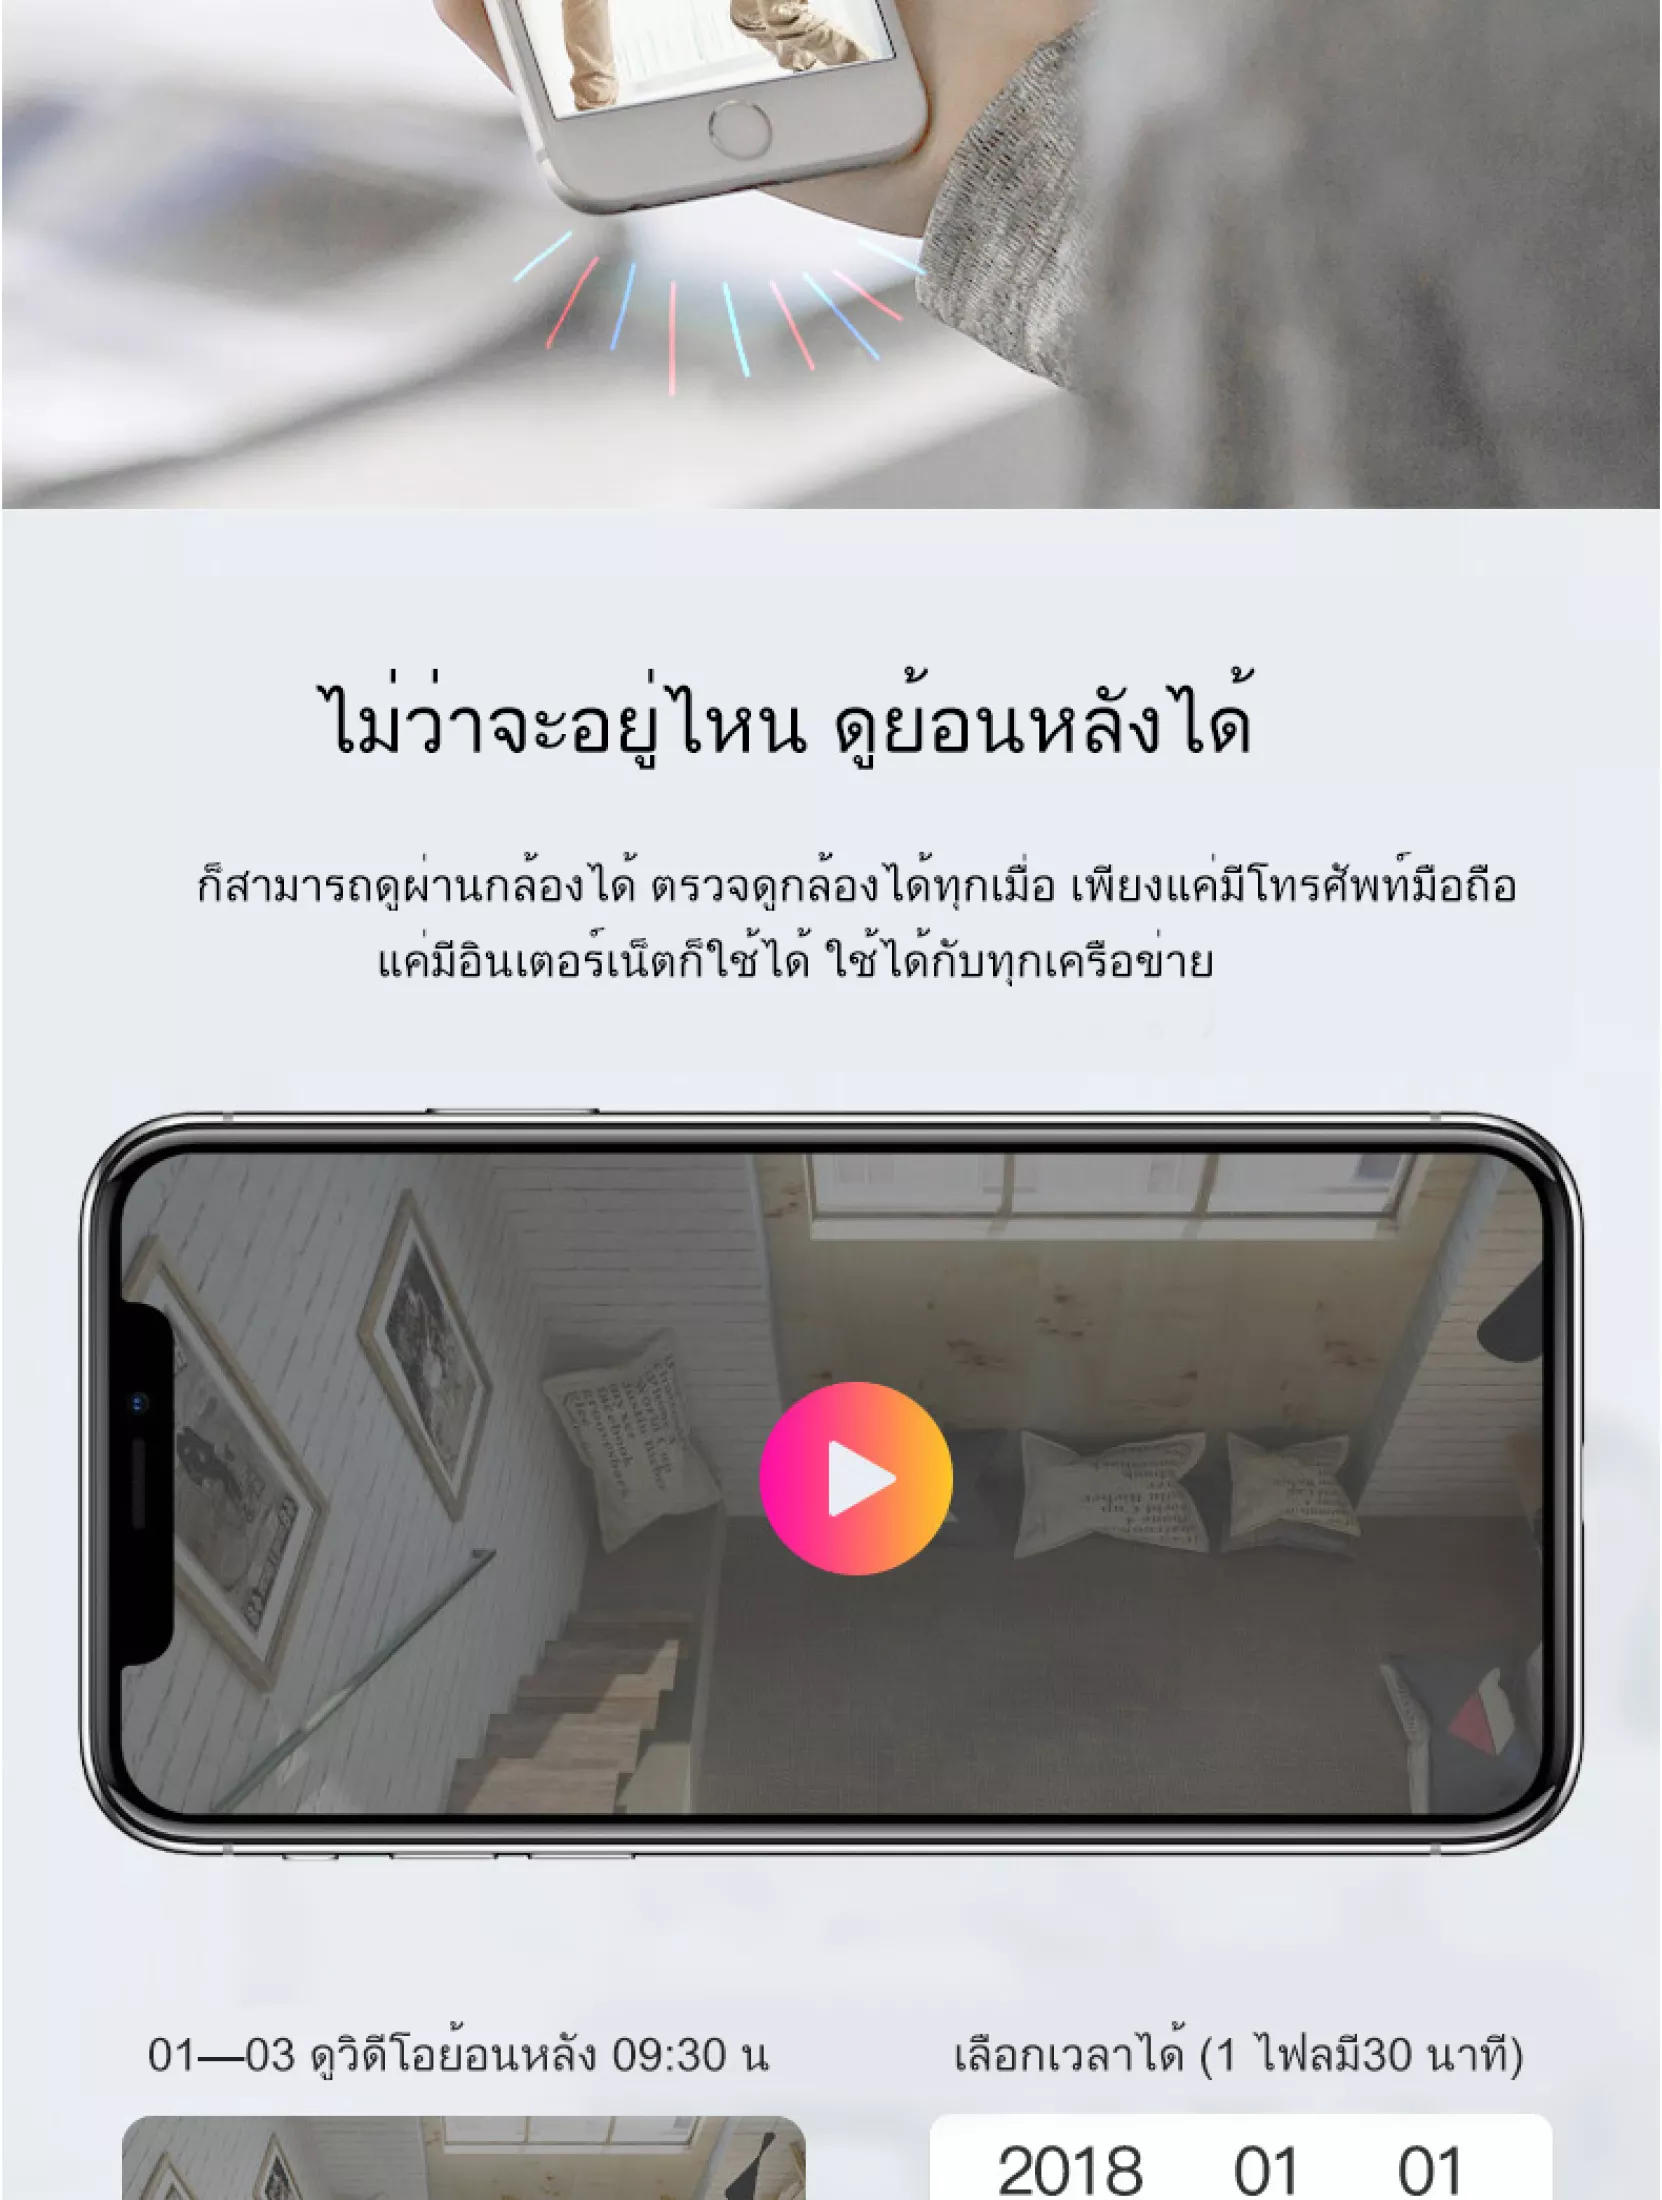 มุมมองเพิ่มเติมของสินค้า กล้องวงจรปิดติดบ้าน เสียงพูดไทยได้ รุ่นแรกของโลก +ดูออนไลน์ผ่านมือถือ+บันทึกชัดระดับHD+สว่างอินฟราเรดมากถึง 6 ดวง+หมุนตามอัตโนมัติ